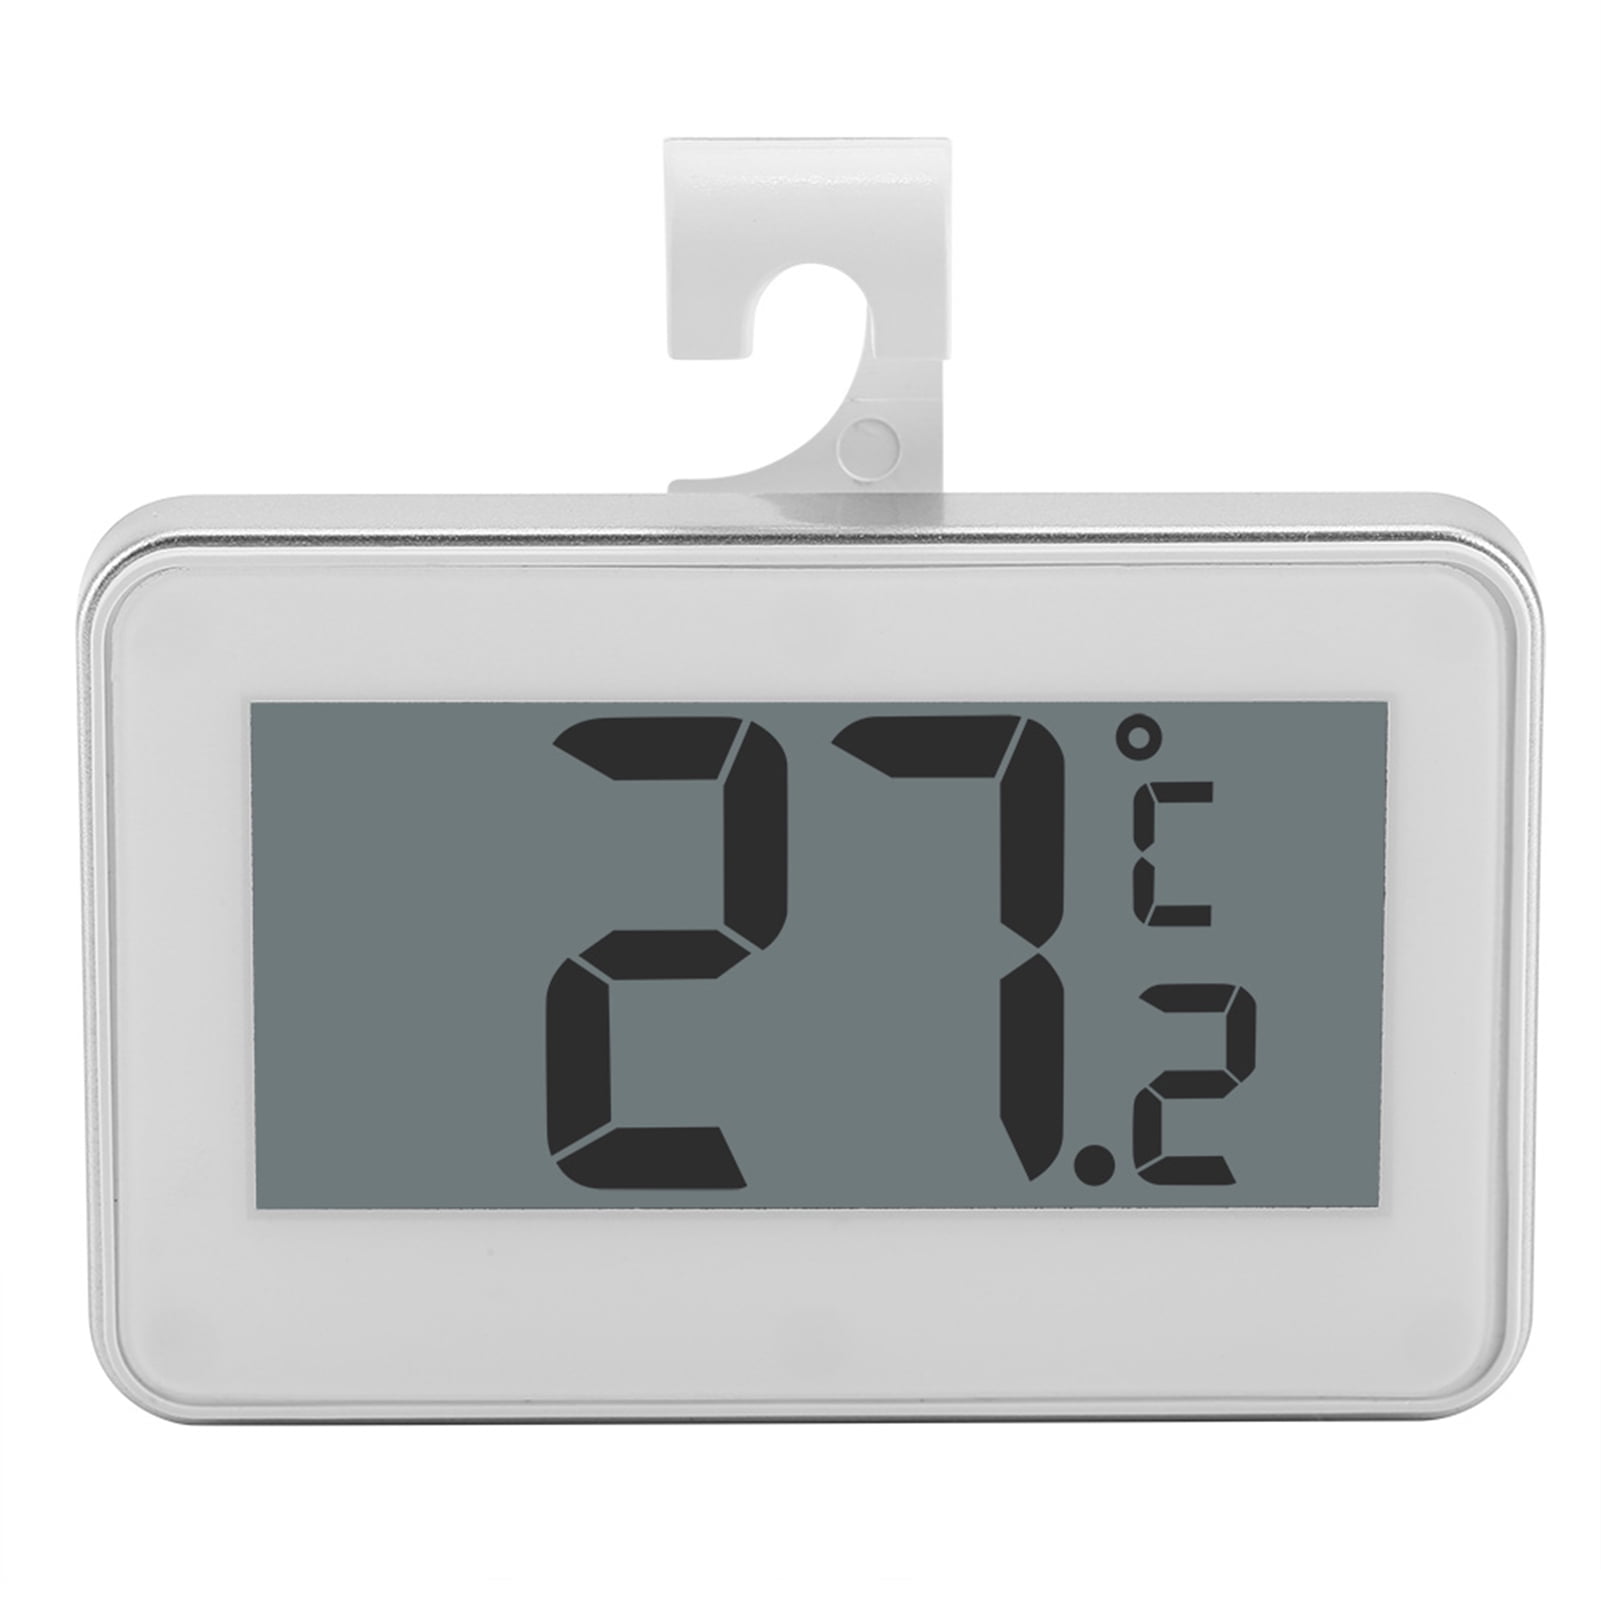 Escali AHF2 Freezer Thermometer White/Silver 